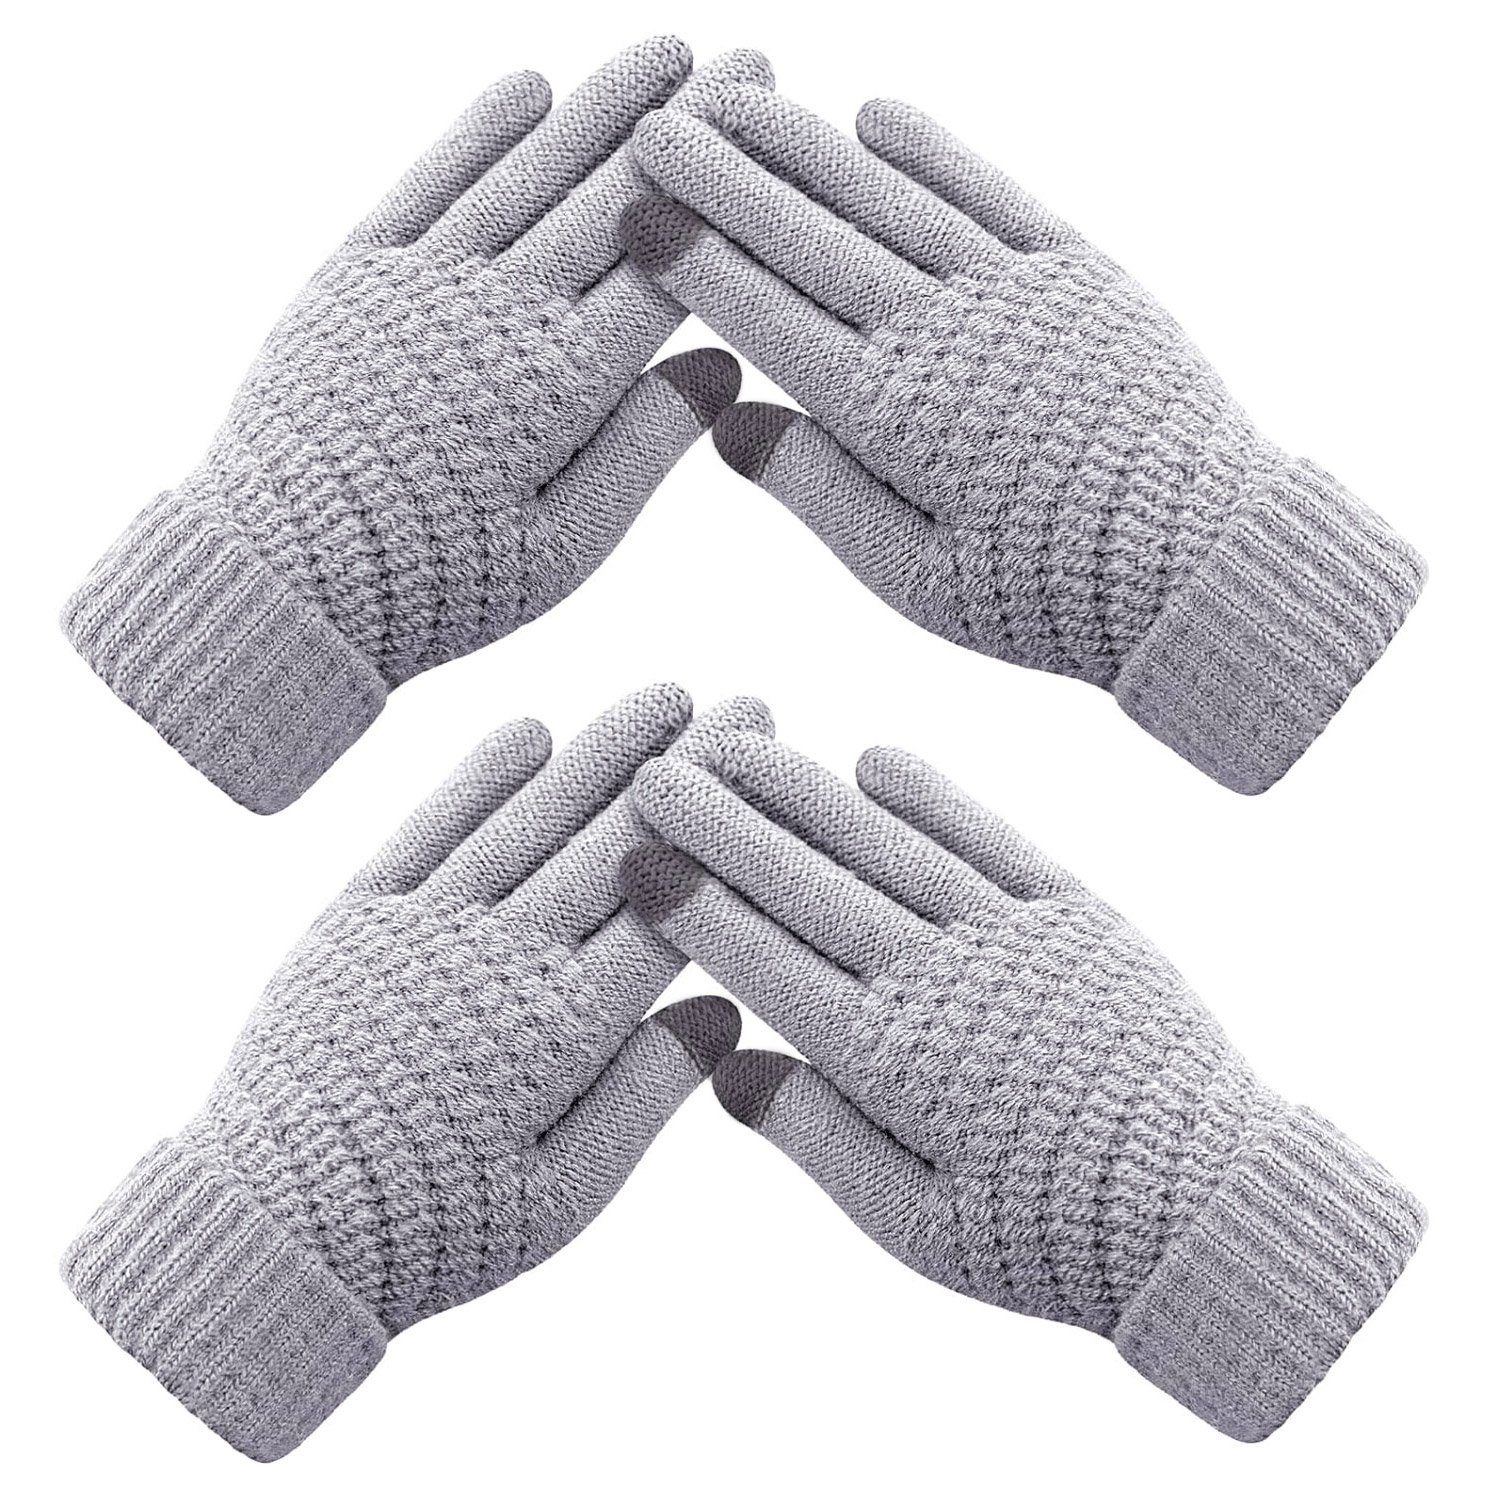 MAGICSHE Fleecehandschuhe Damen Touchscreen Wolle Strickhandschuhe 2 Paar Grau | Fleecehandschuhe